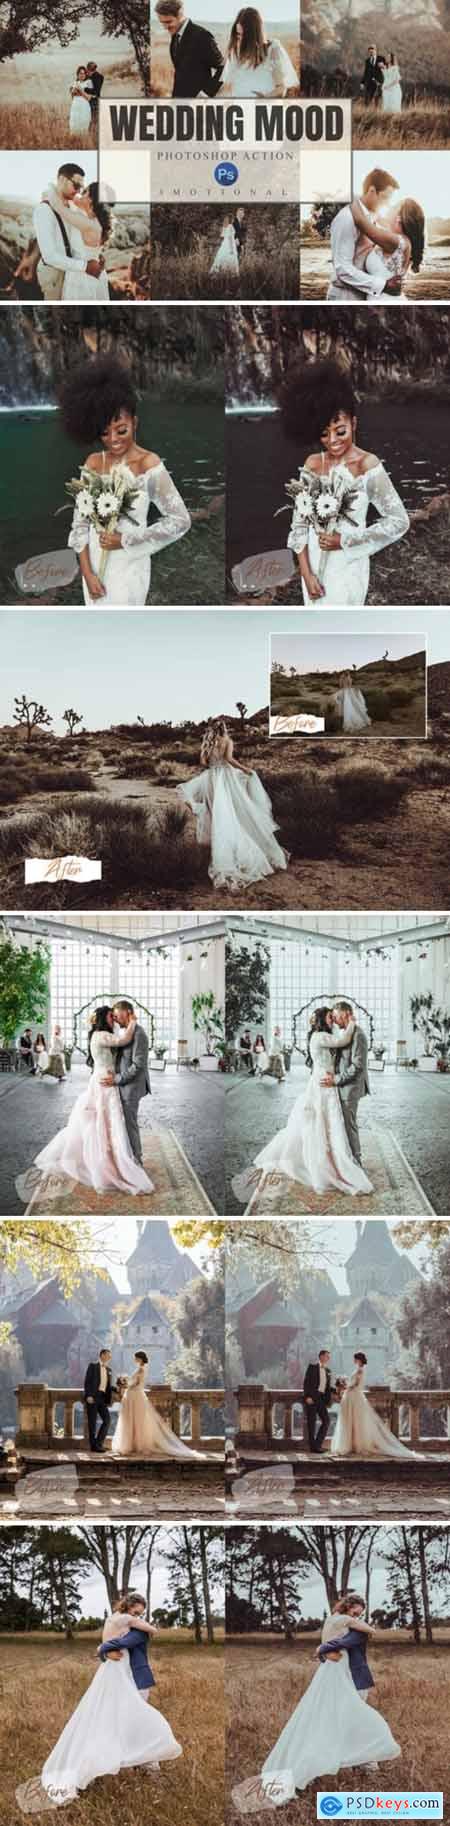 8 Wedding Mood Photoshop Actions ACR LUT 4391908